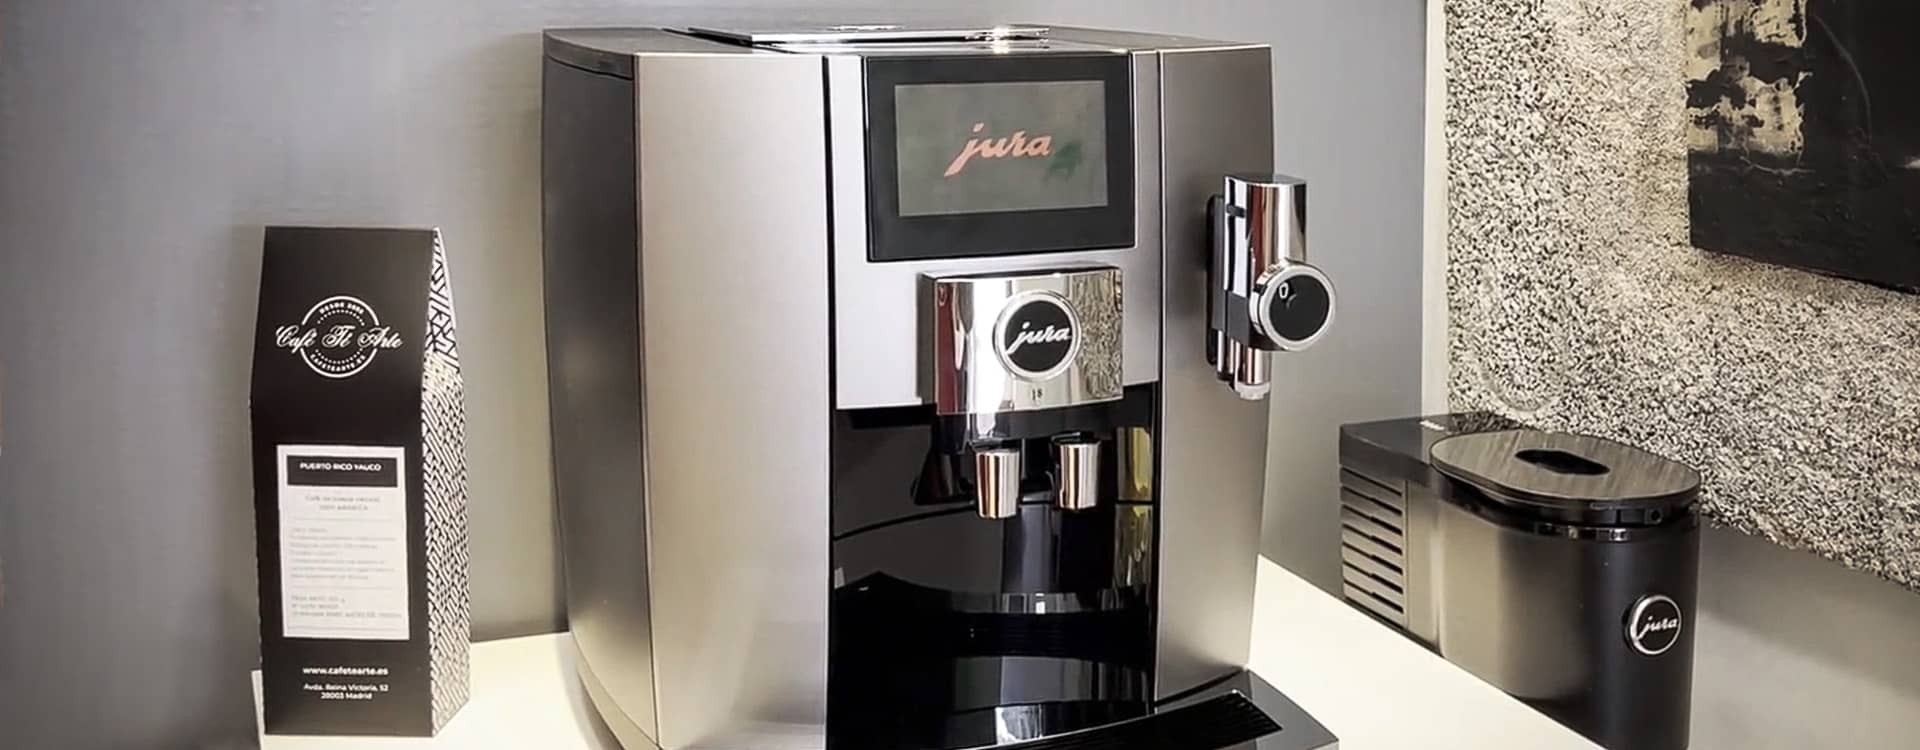 Cafeteras Superautomáticas Pequeñas - Conoce ahora las 4 mejores